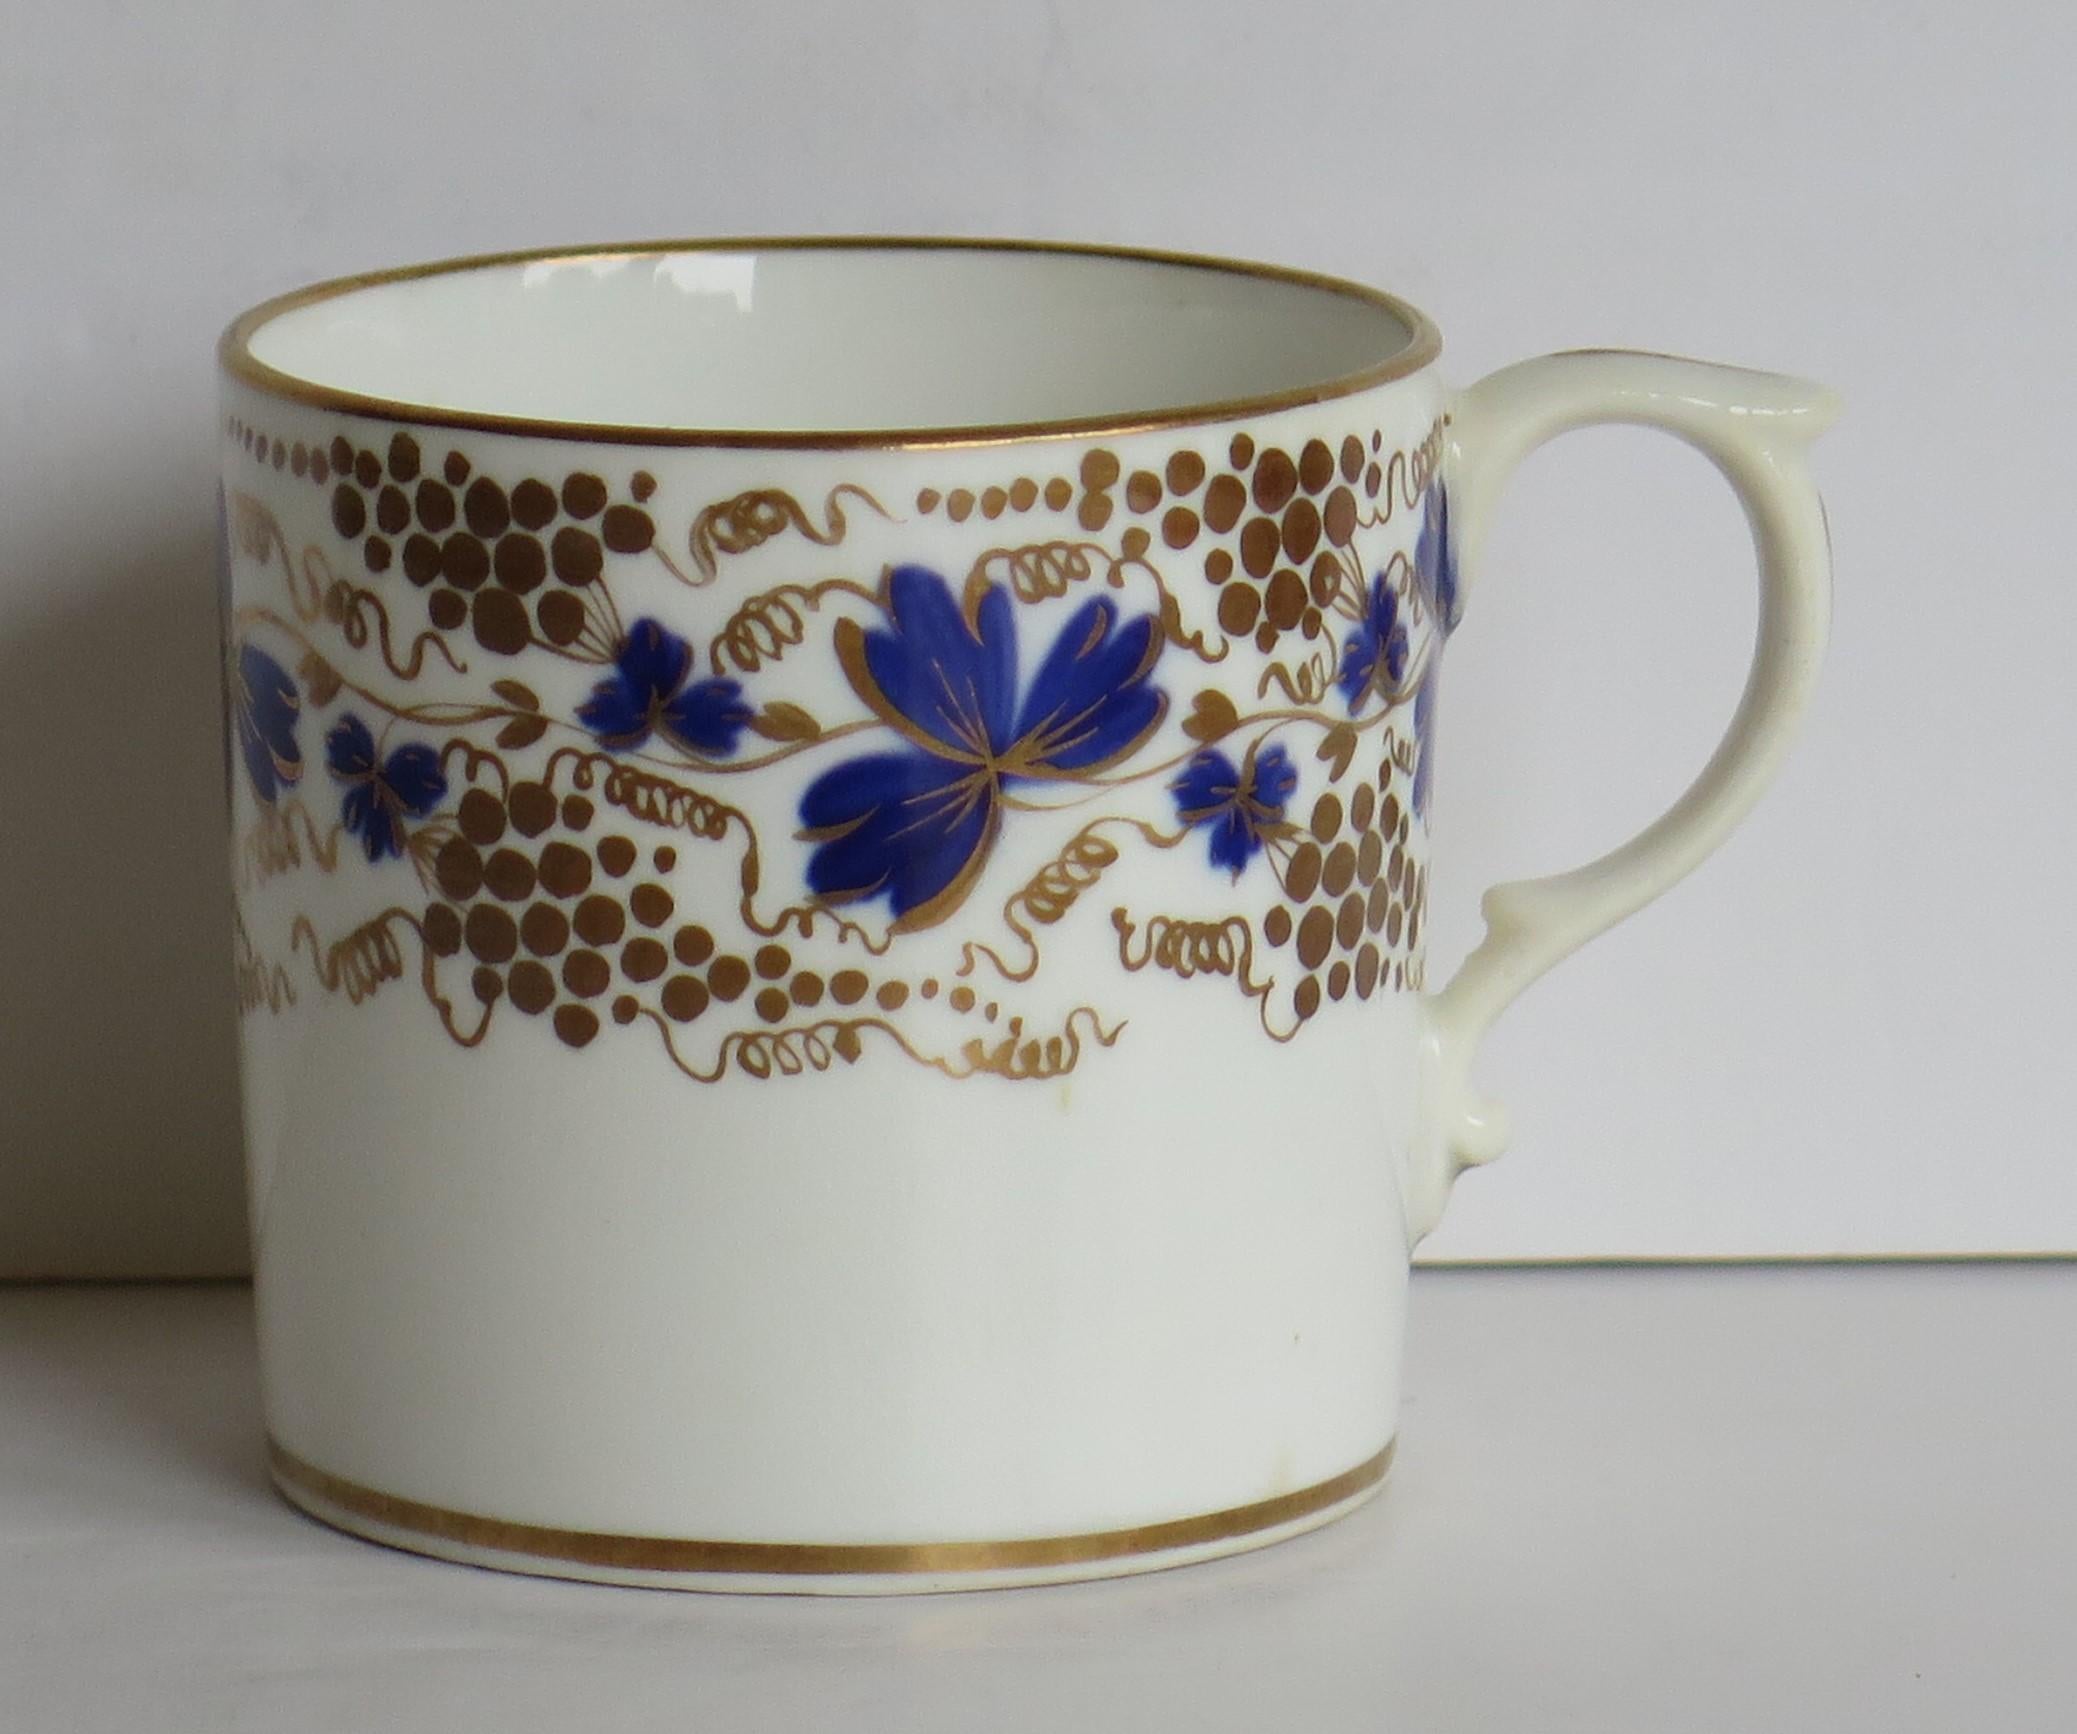 Il s'agit d'une boîte à café en porcelaine finement peinte à la main, fabriquée par l'usine de Derby, en Angleterre, dans la période de la Régence géorgienne du 19e siècle, vers 1825
 
Les boîtes à café à bord droit n'ont été fabriquées qu'au